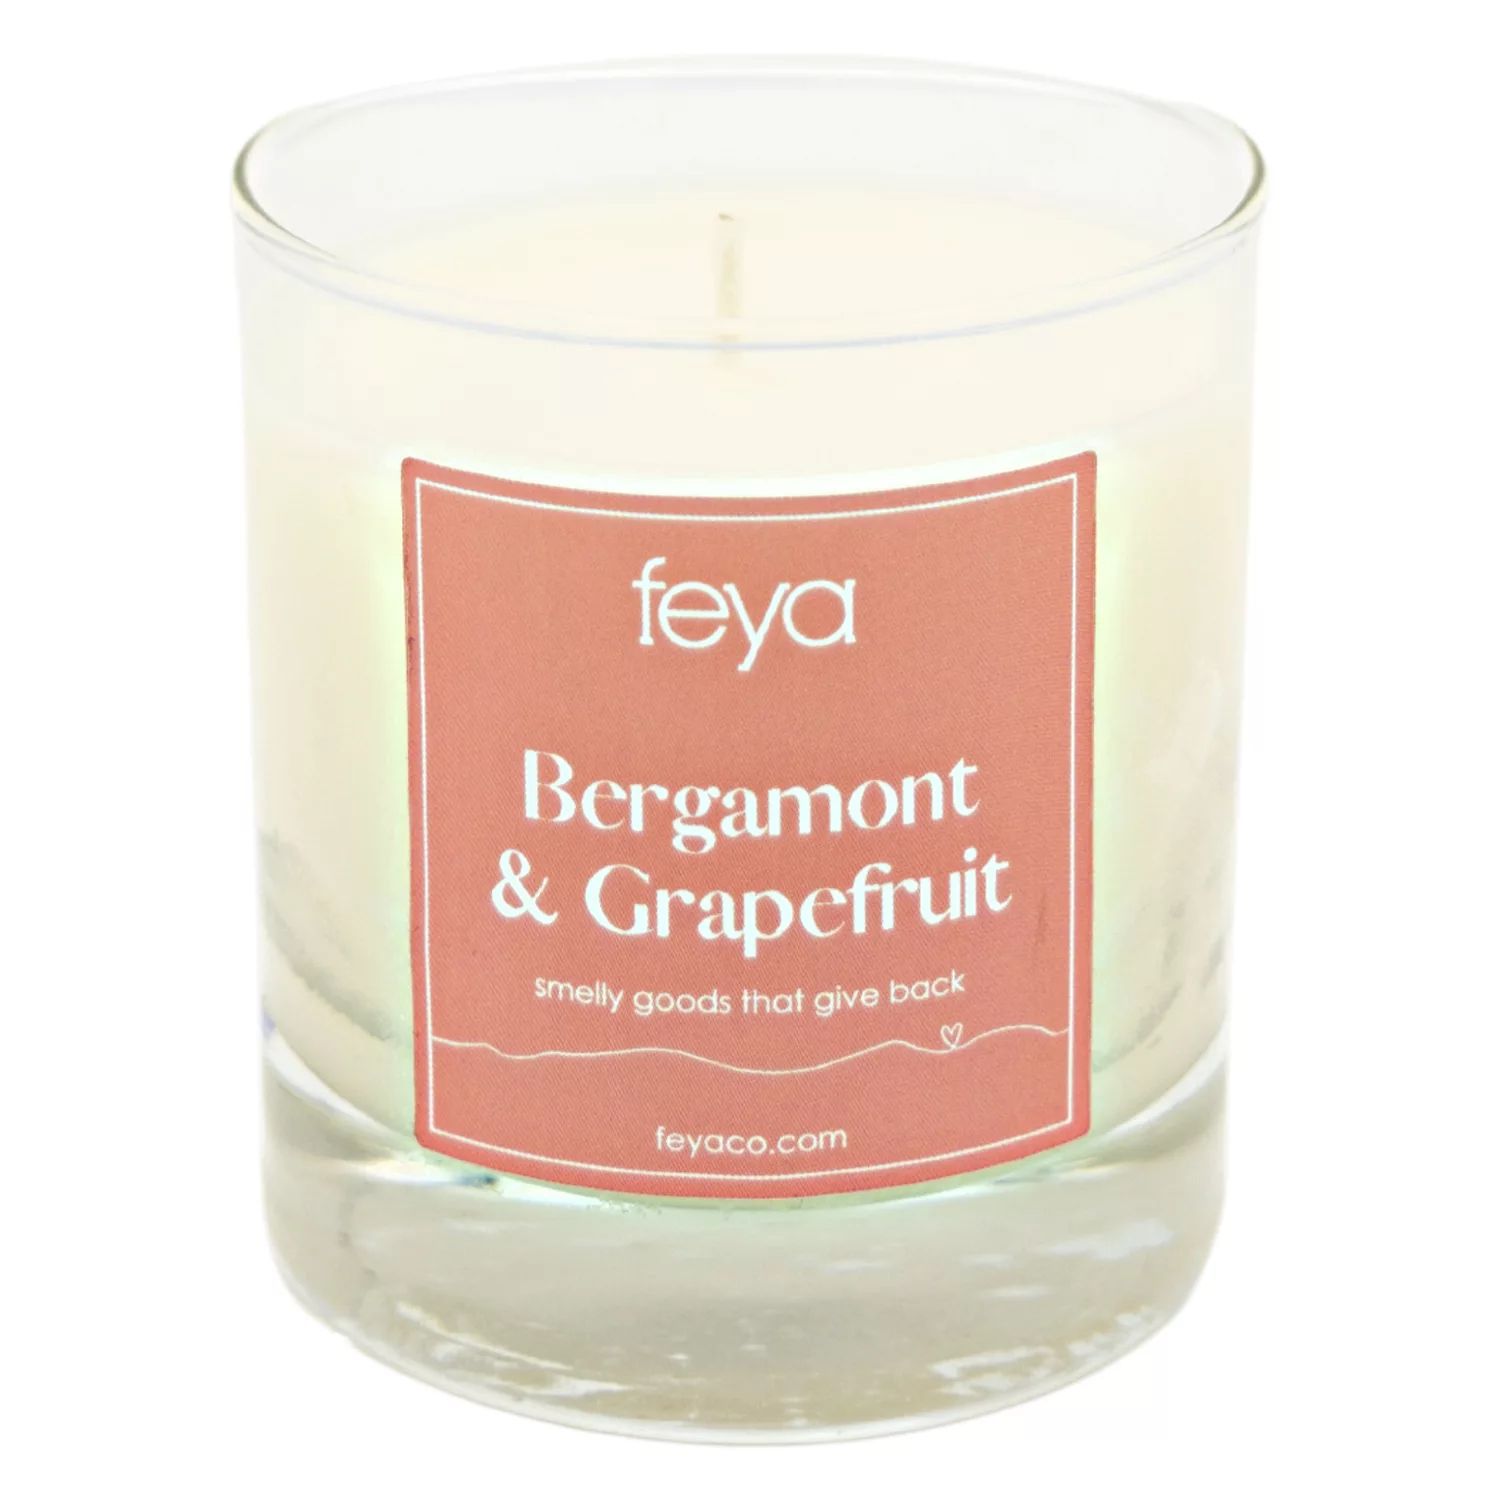 Свечи Feya с бергамотом и грейпфрутом, 6,5 унций. Соевая свеча ароматическая соевая свеча soy candle 1893 200г